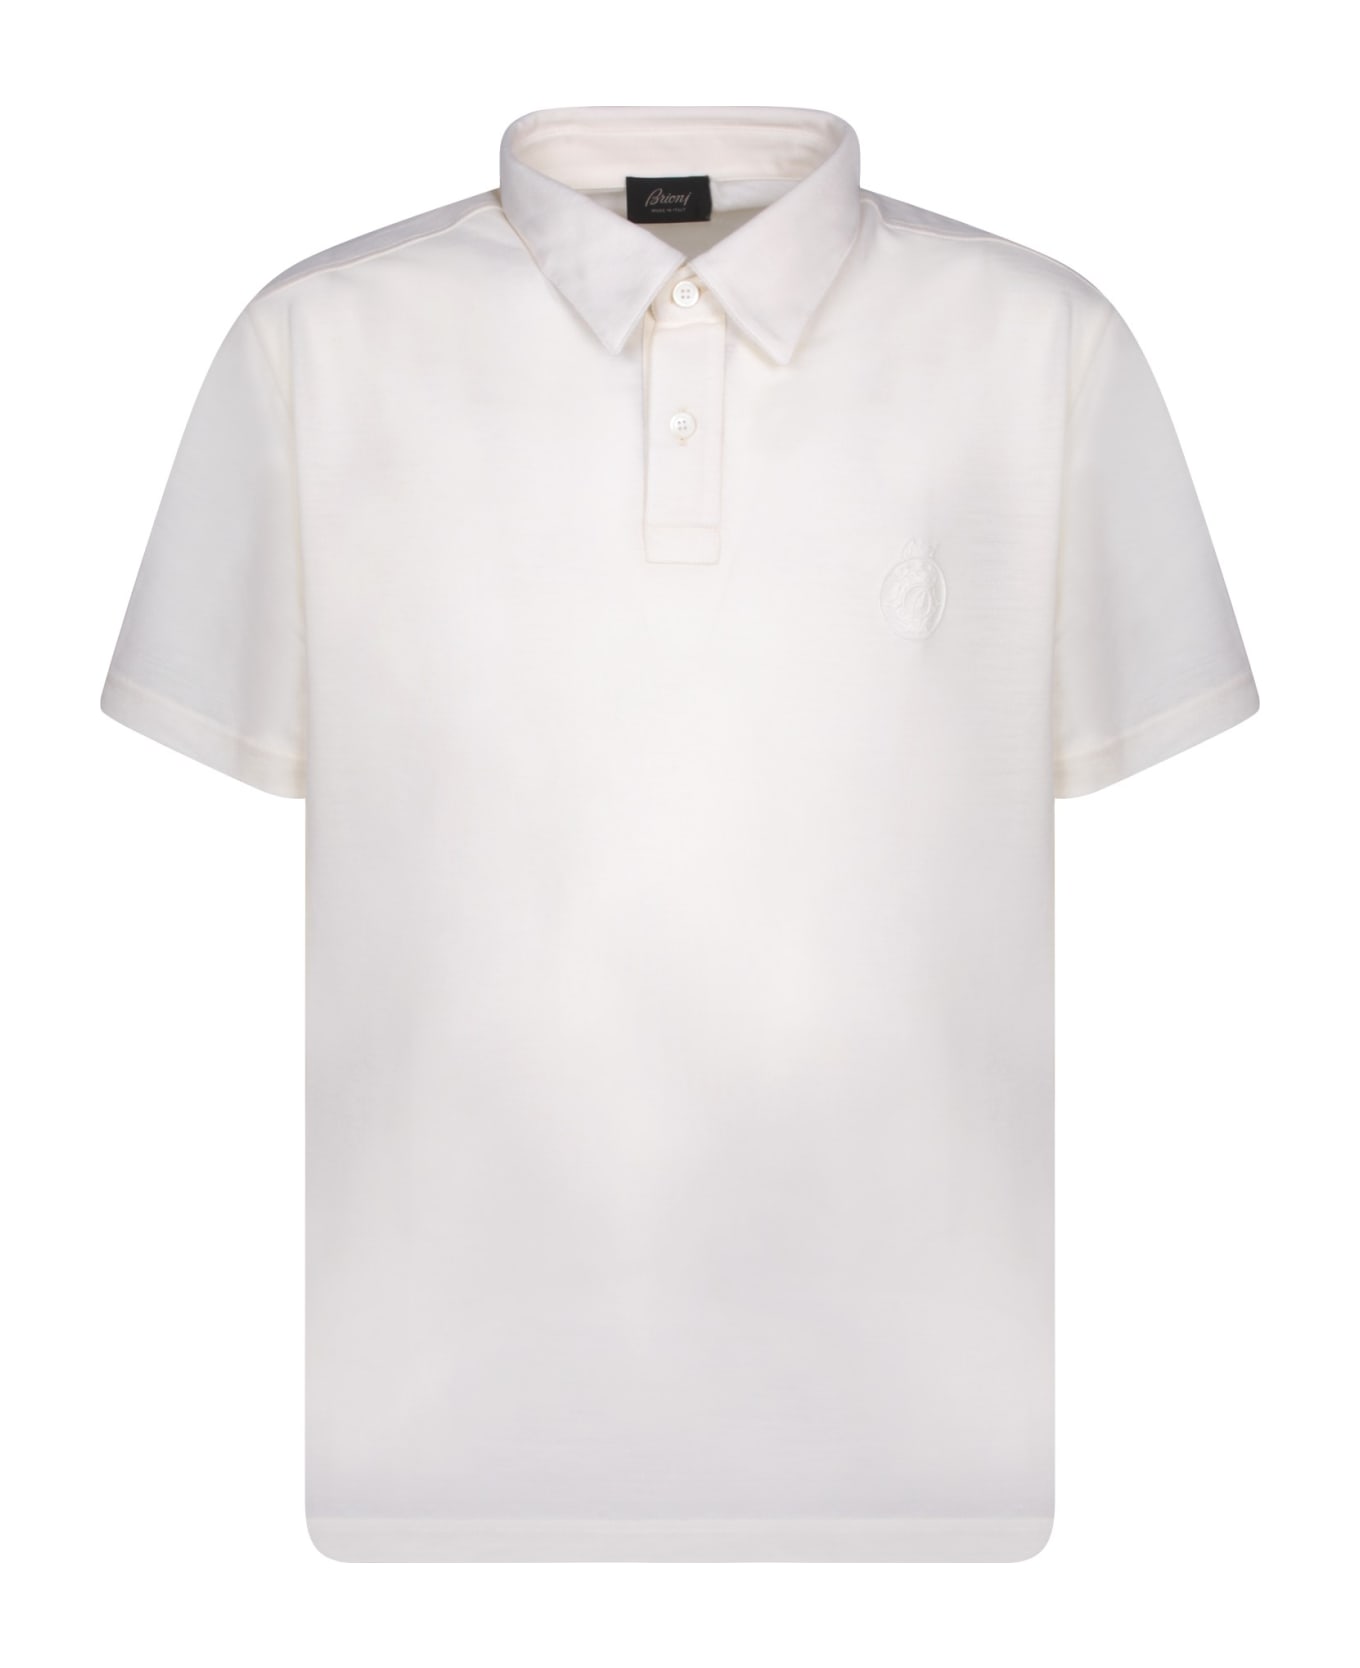 Brioni Golf Logo White Polo Shirt - White ポロシャツ